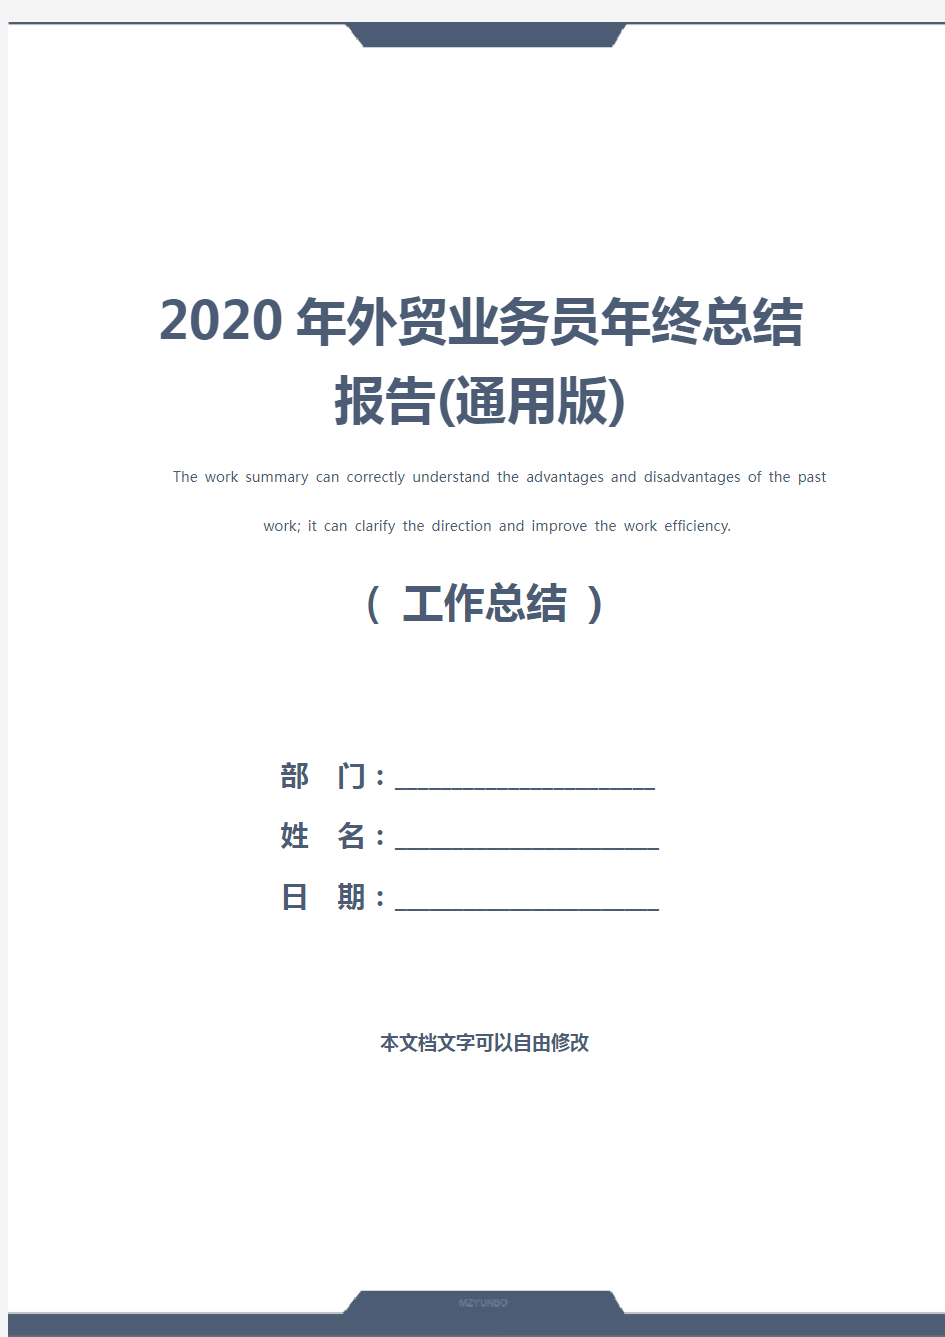 2020年外贸业务员年终总结报告(通用版)